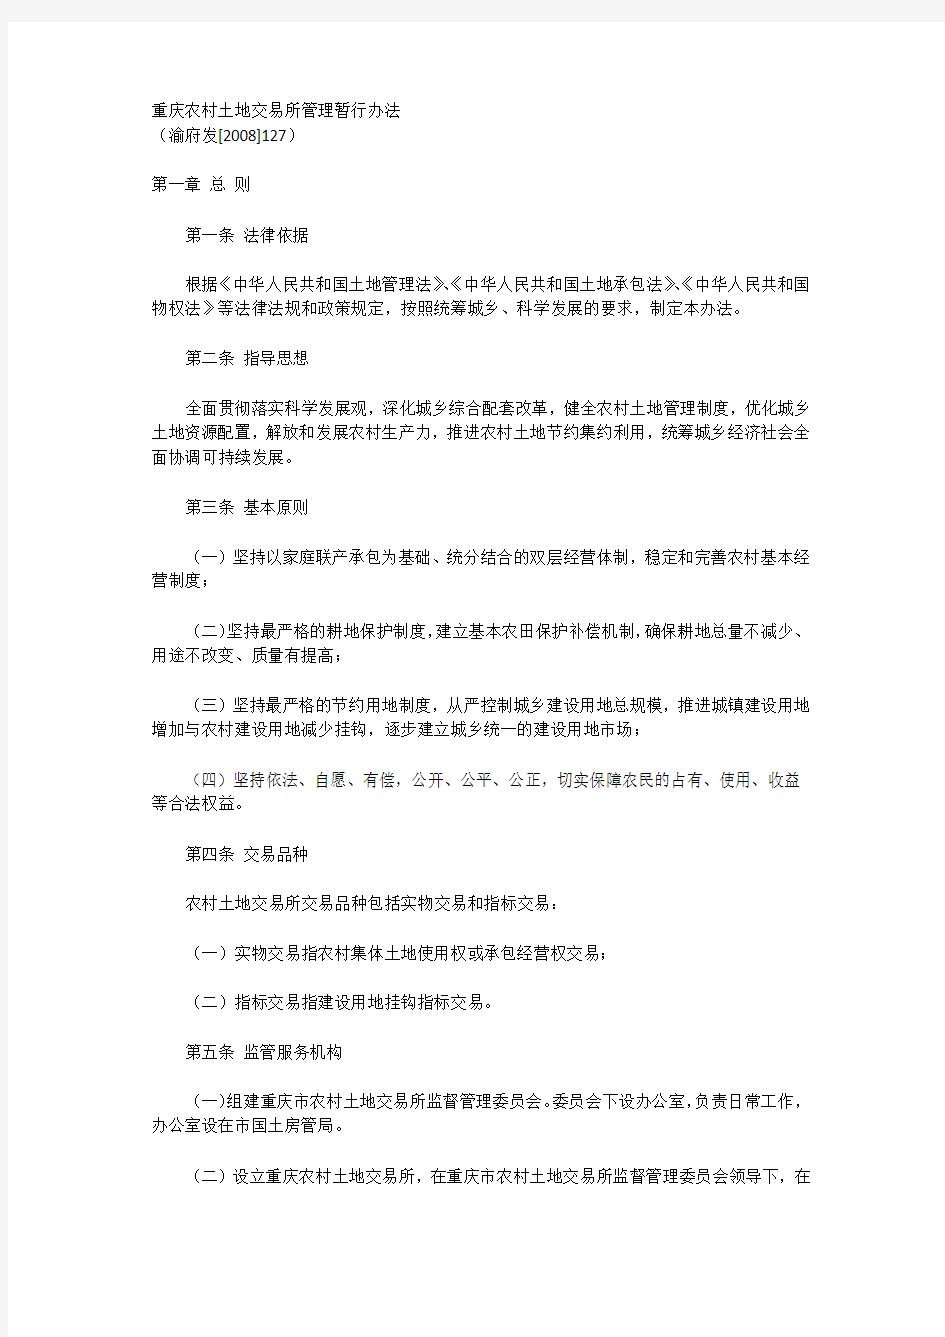 重庆农村土地交易所管理暂行办法